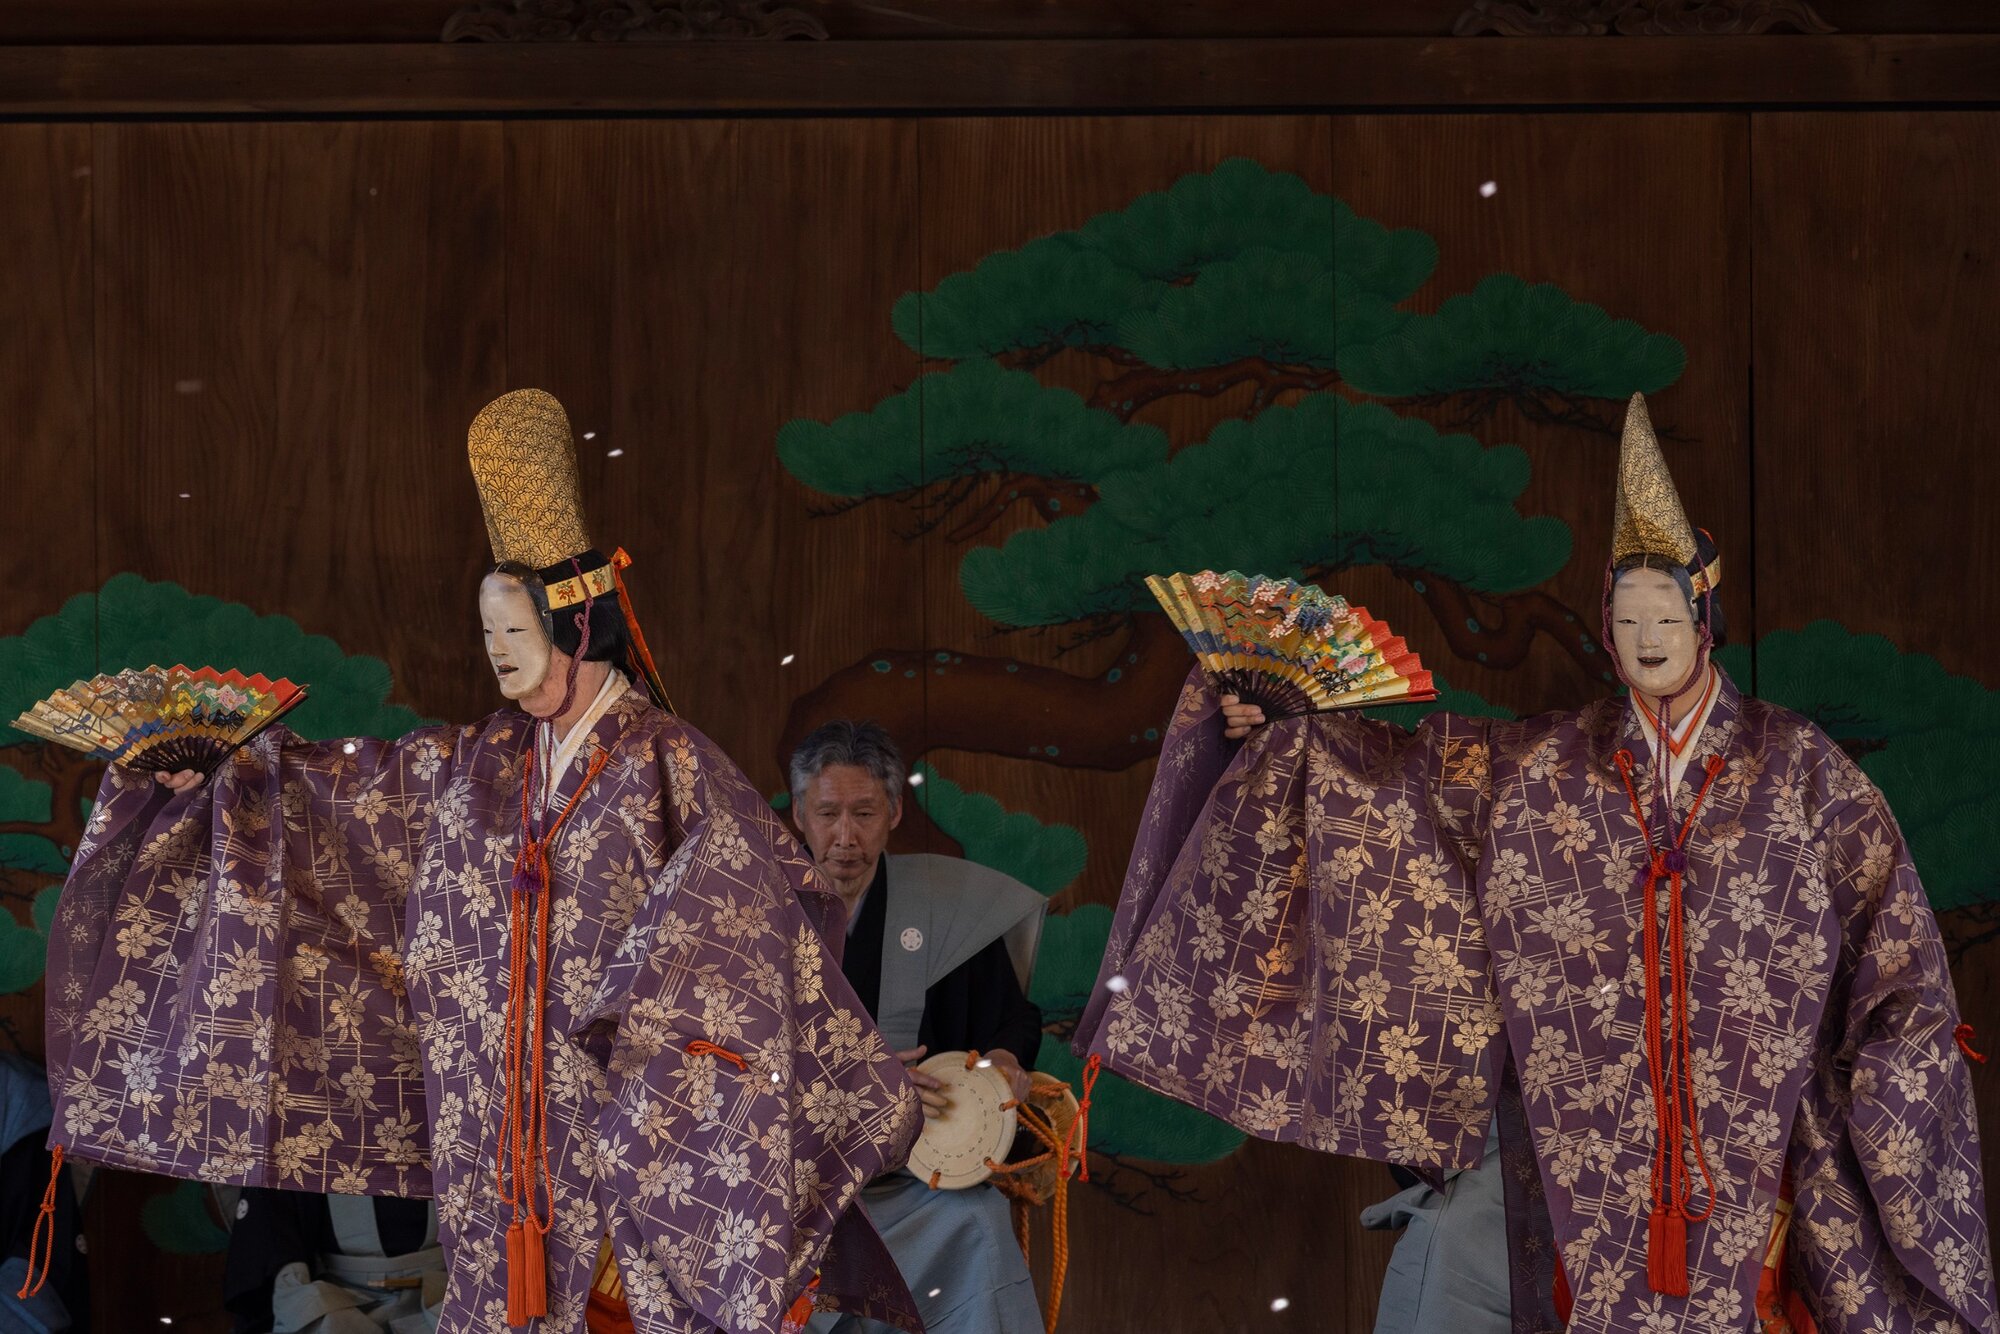 Hivatásos nó drámajátékot adnak elő a Kaszuga Sinto szentély hagyományos szabadtéri színpadán.